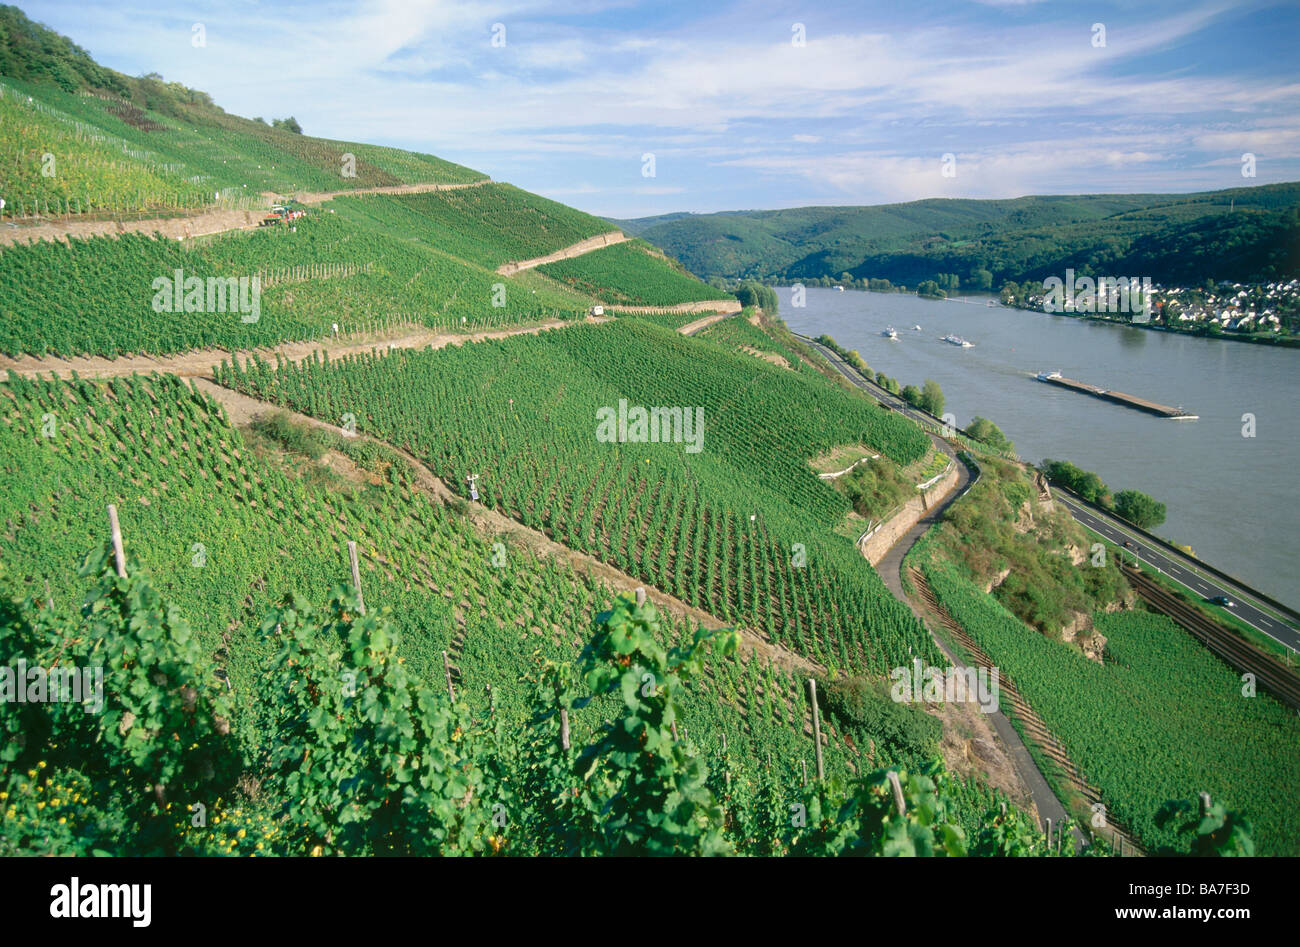 Vue sur un vignoble à Rhin, Boppard, Rhénanie-Palatinat, Allemagne Banque D'Images